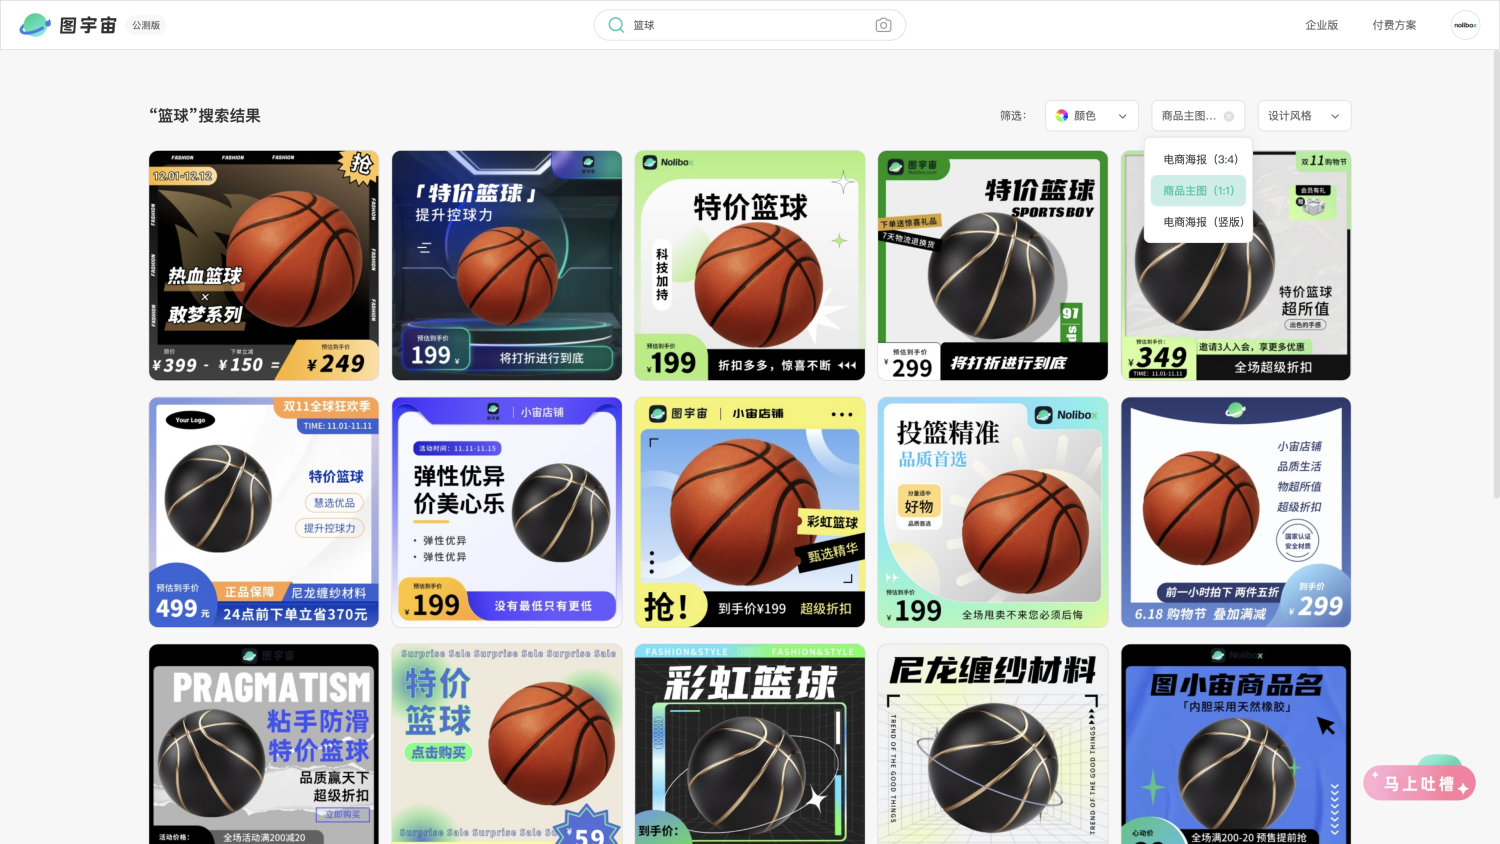 图宇宙-「篮球」商品主图（1:1）模板中心结果展示